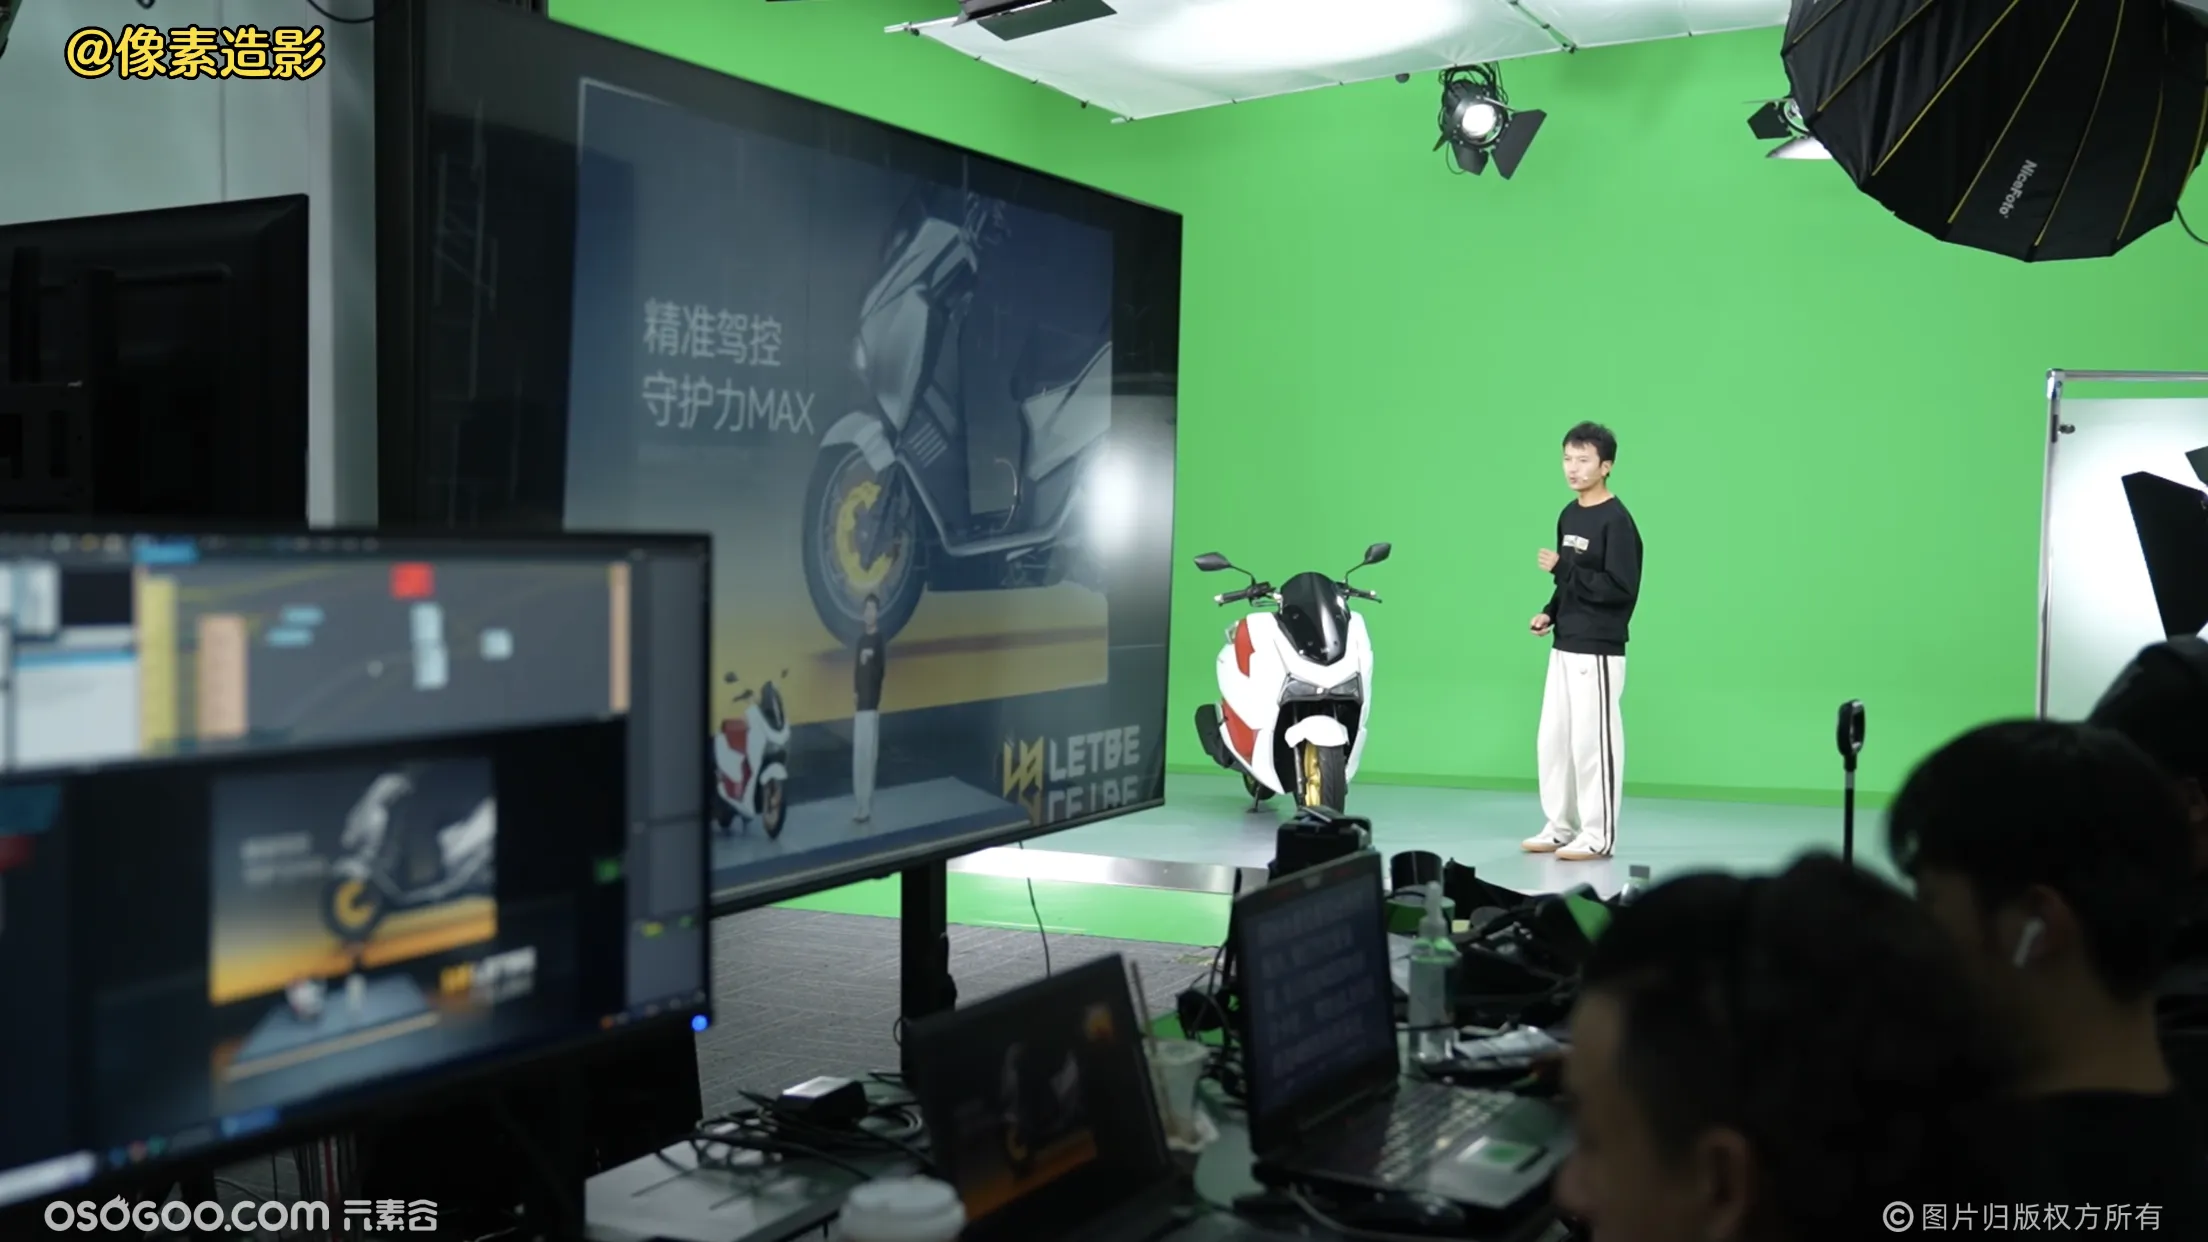 猎变（摩托车）品牌线上虚拟发布会，实景+绿幕结合拍摄